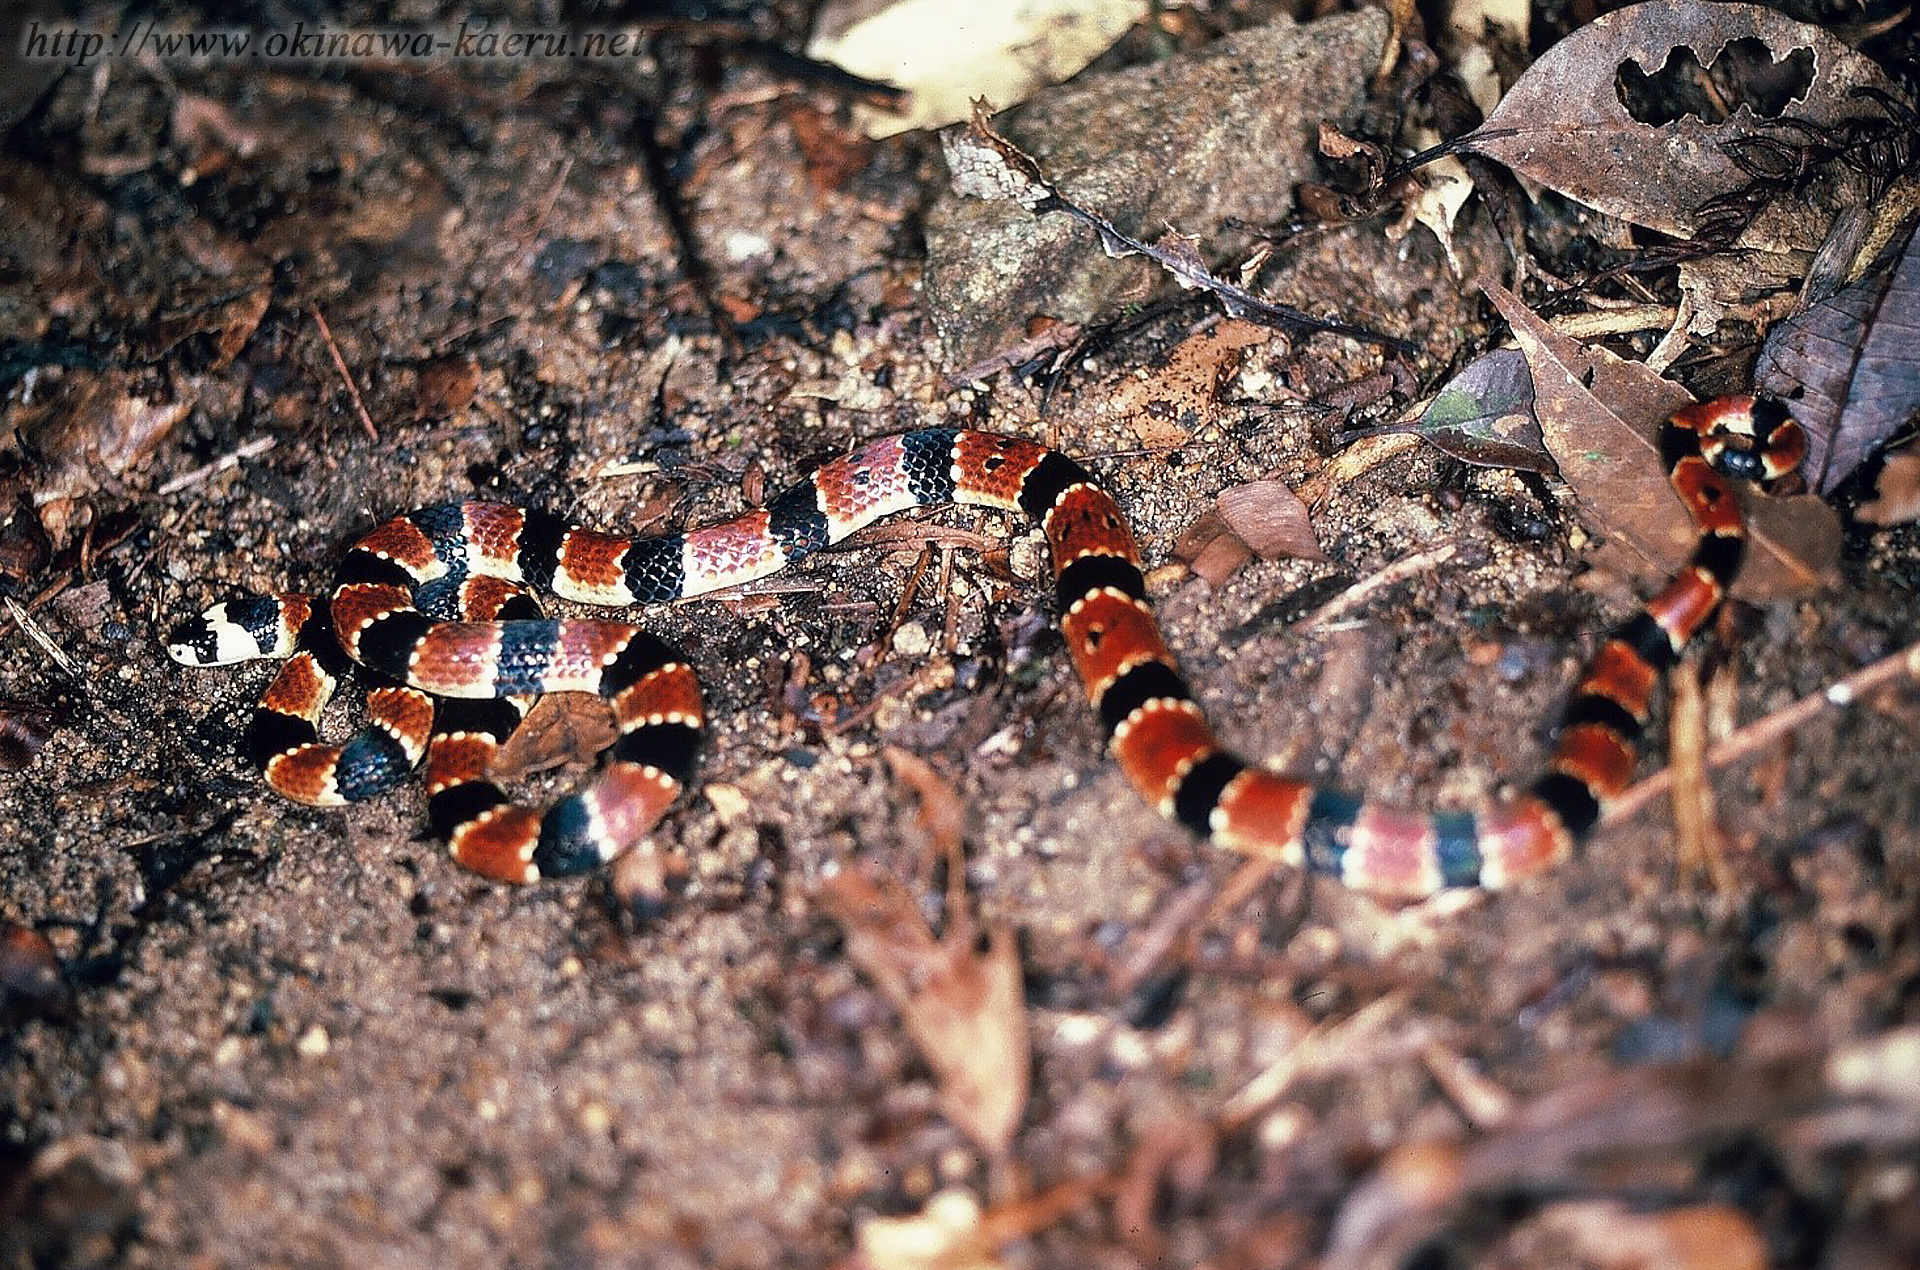 イワサキワモンベニヘビの画像